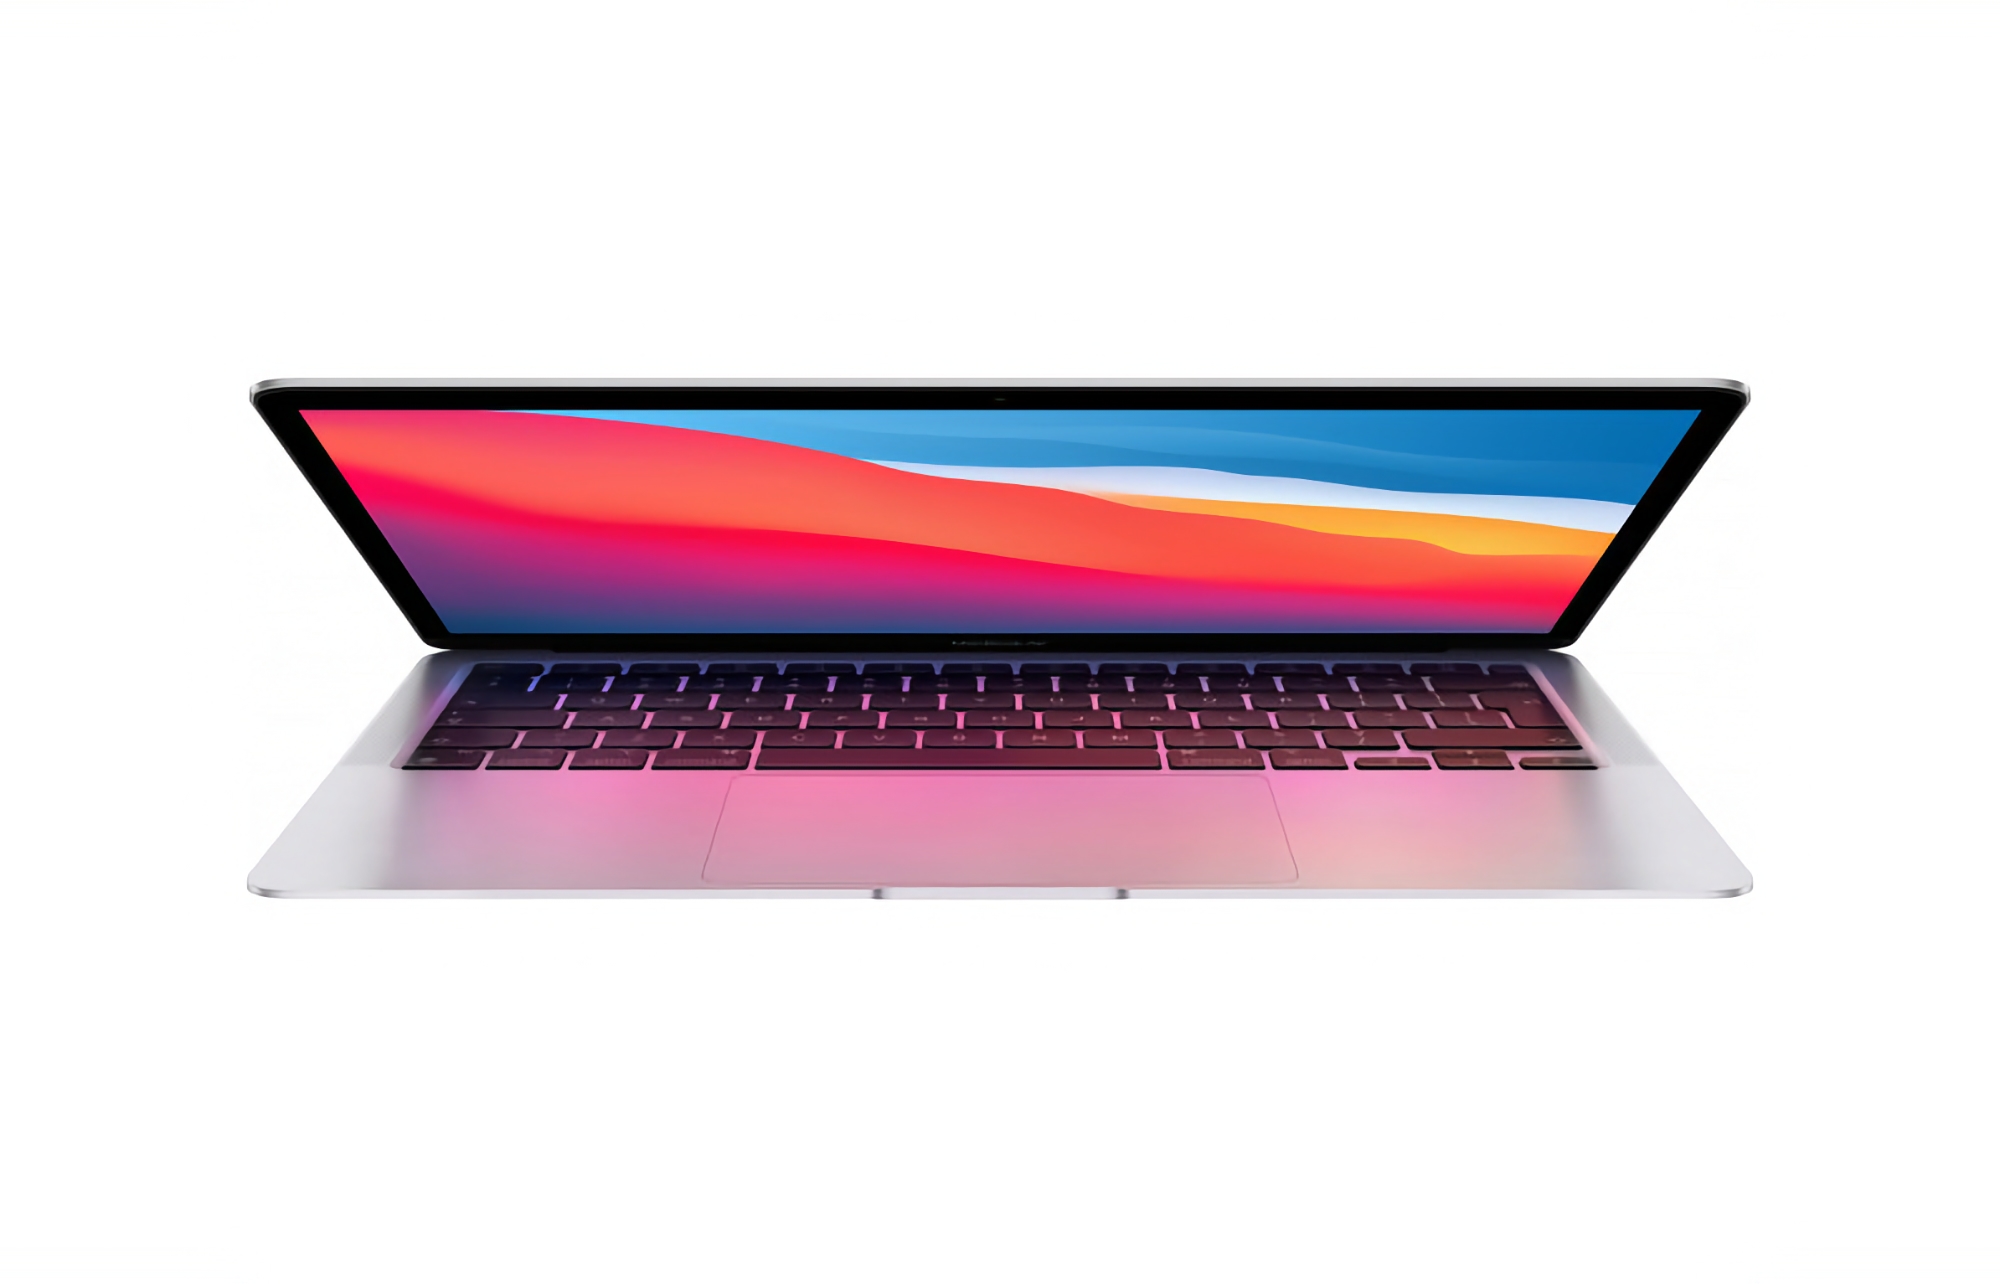 Offerta del giorno: MacBook Air con chip M1 su Amazon a 699 dollari (300 dollari di sconto)